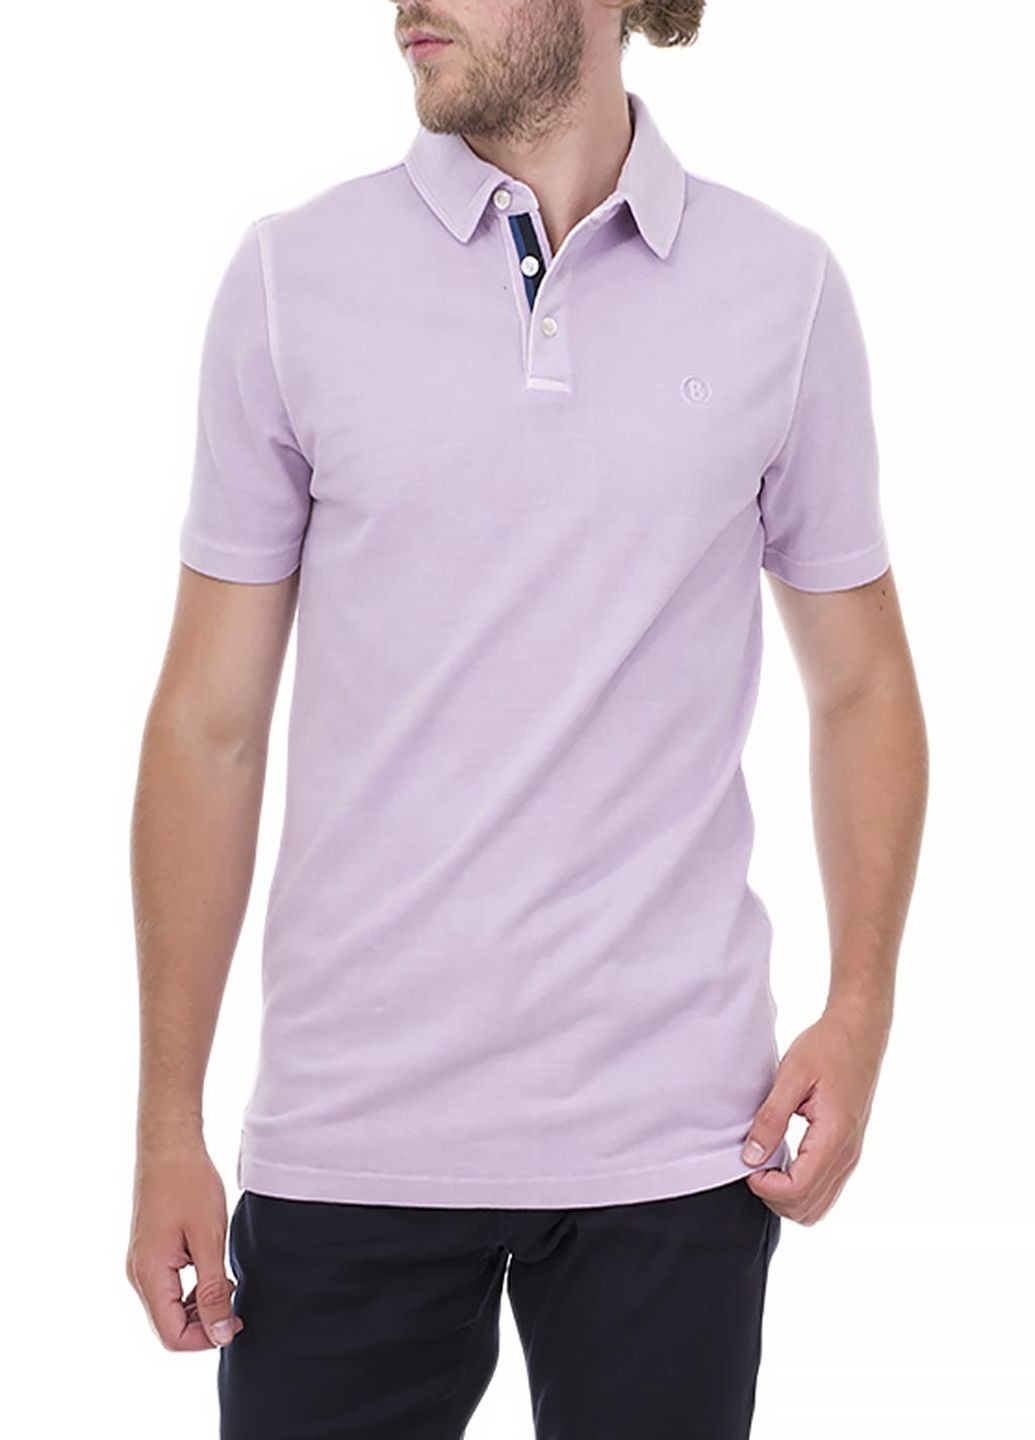 Фиолетовая футболка-поло чоловіче для мужчин Bogner однотонная